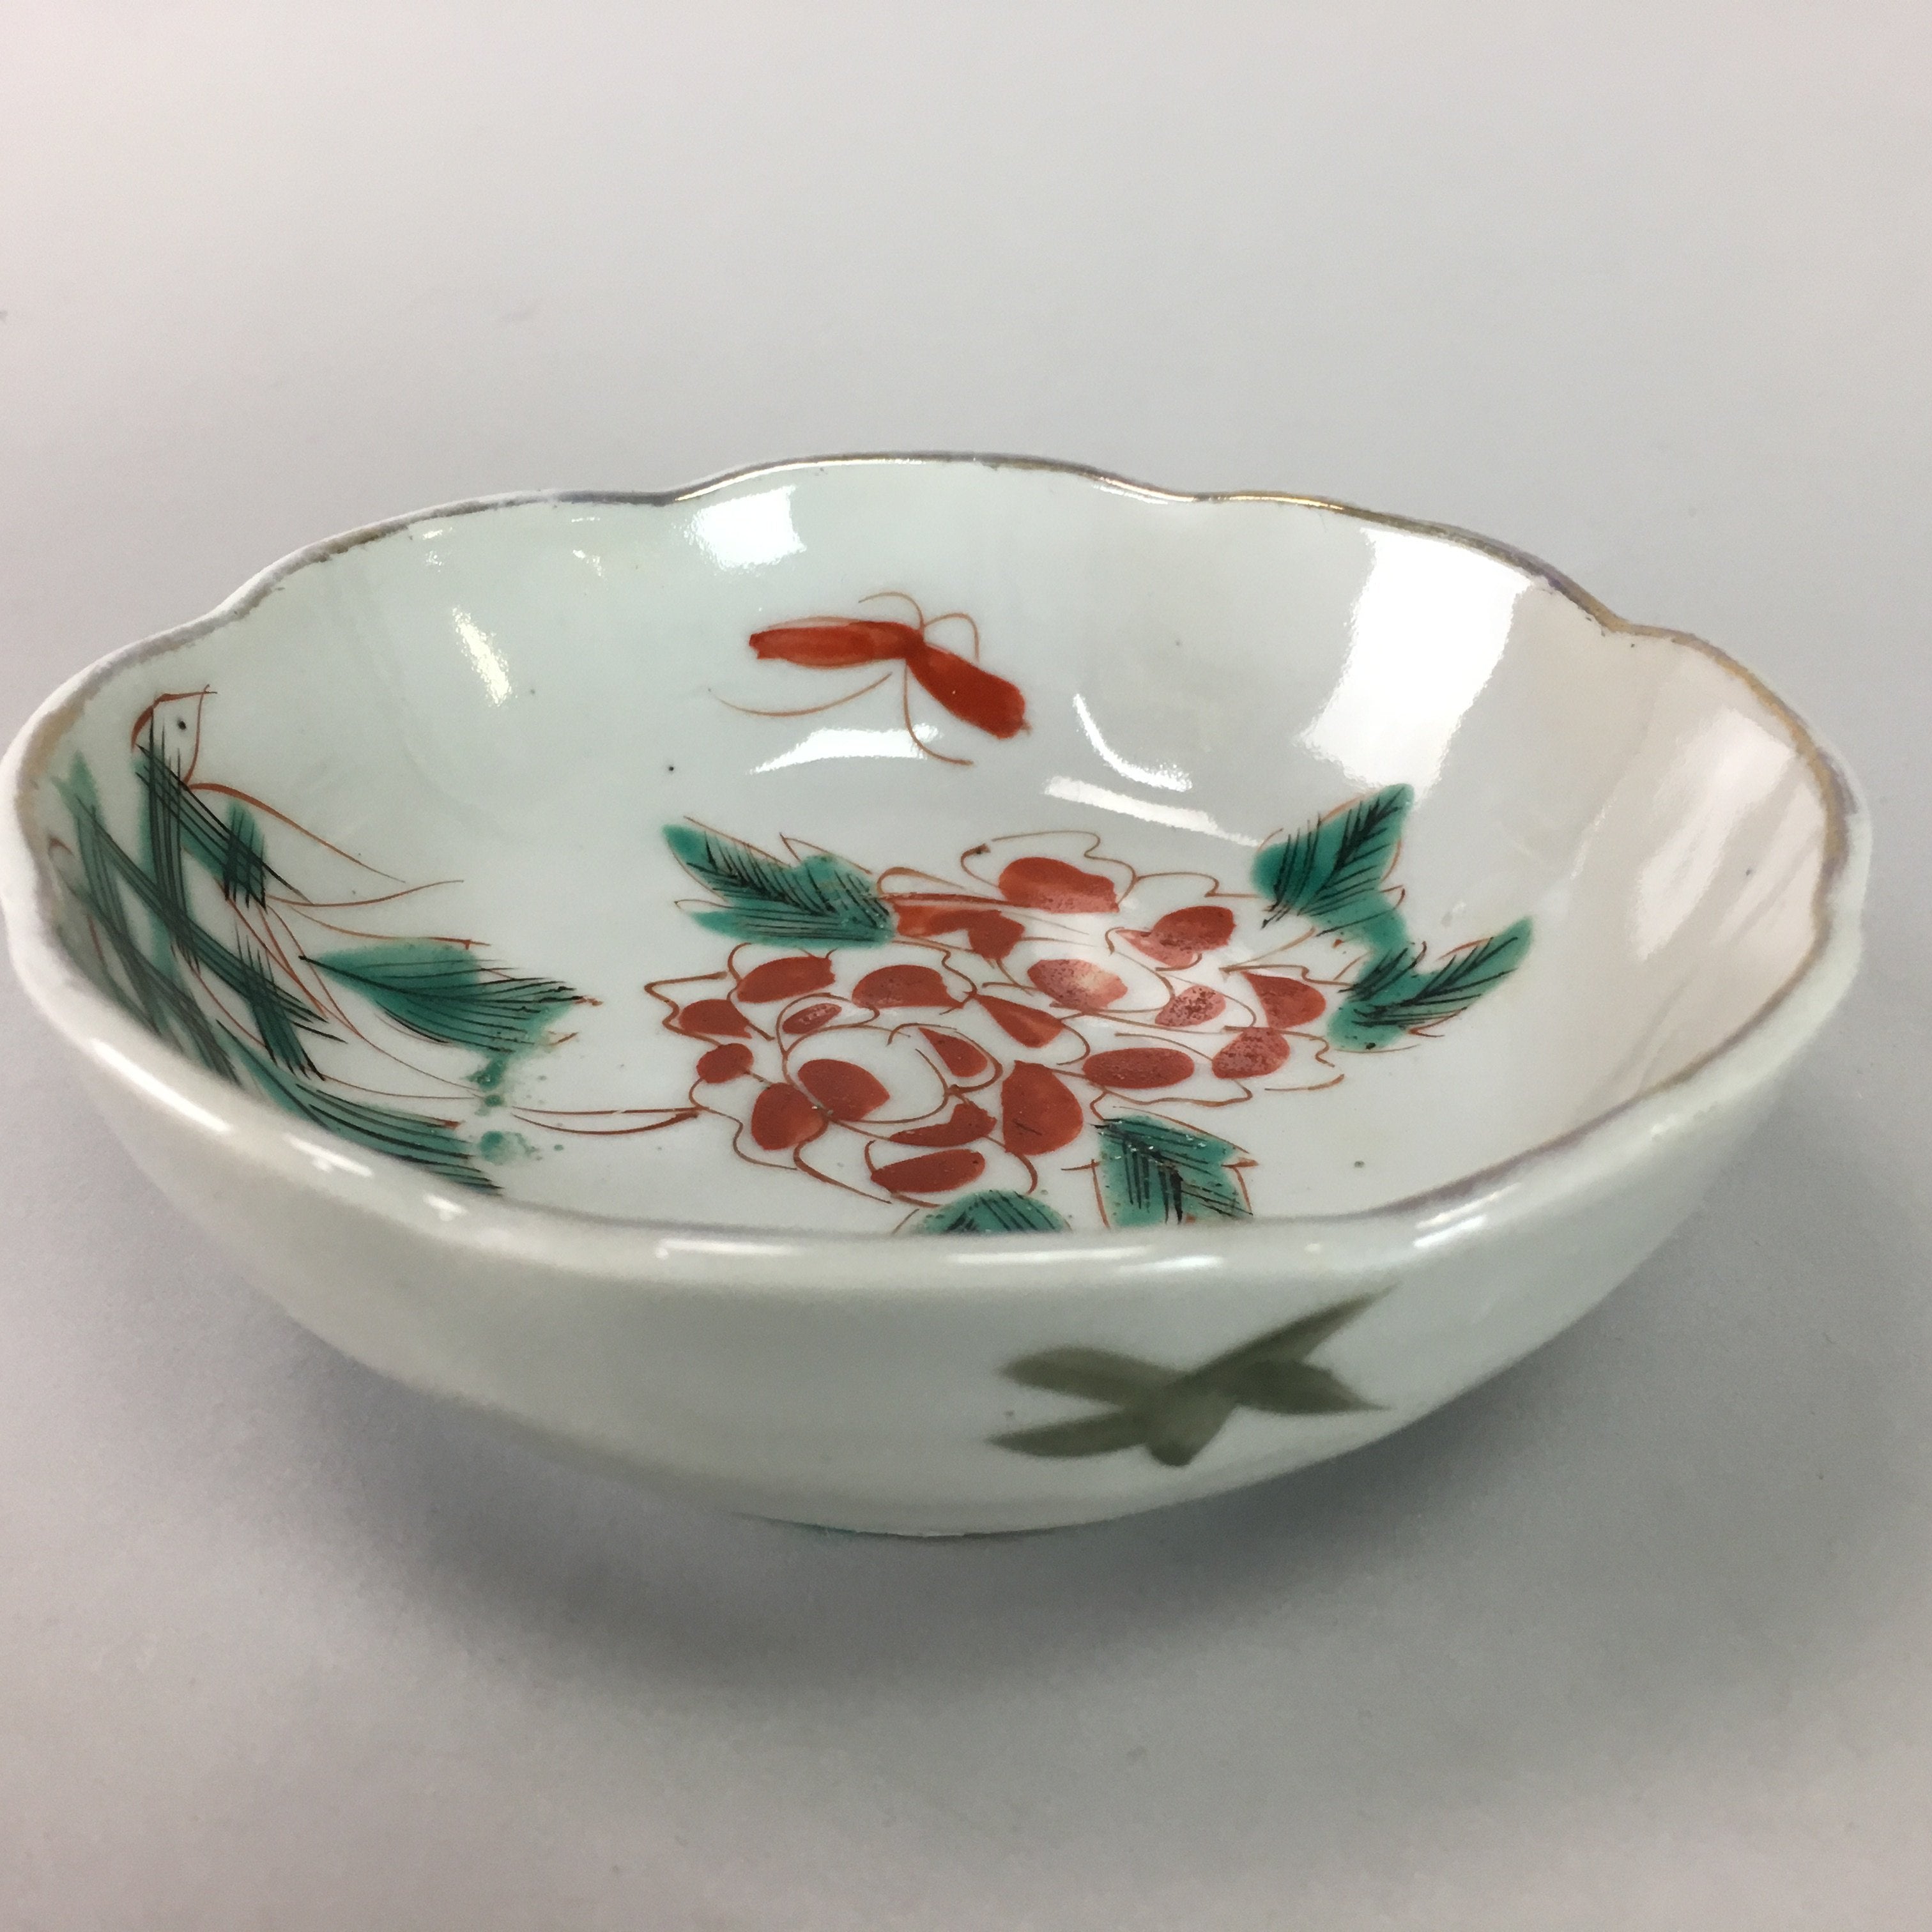 Japanese Porcelain Bowl Vtg Kobachi C1930 Floral Butterfly Design PT411